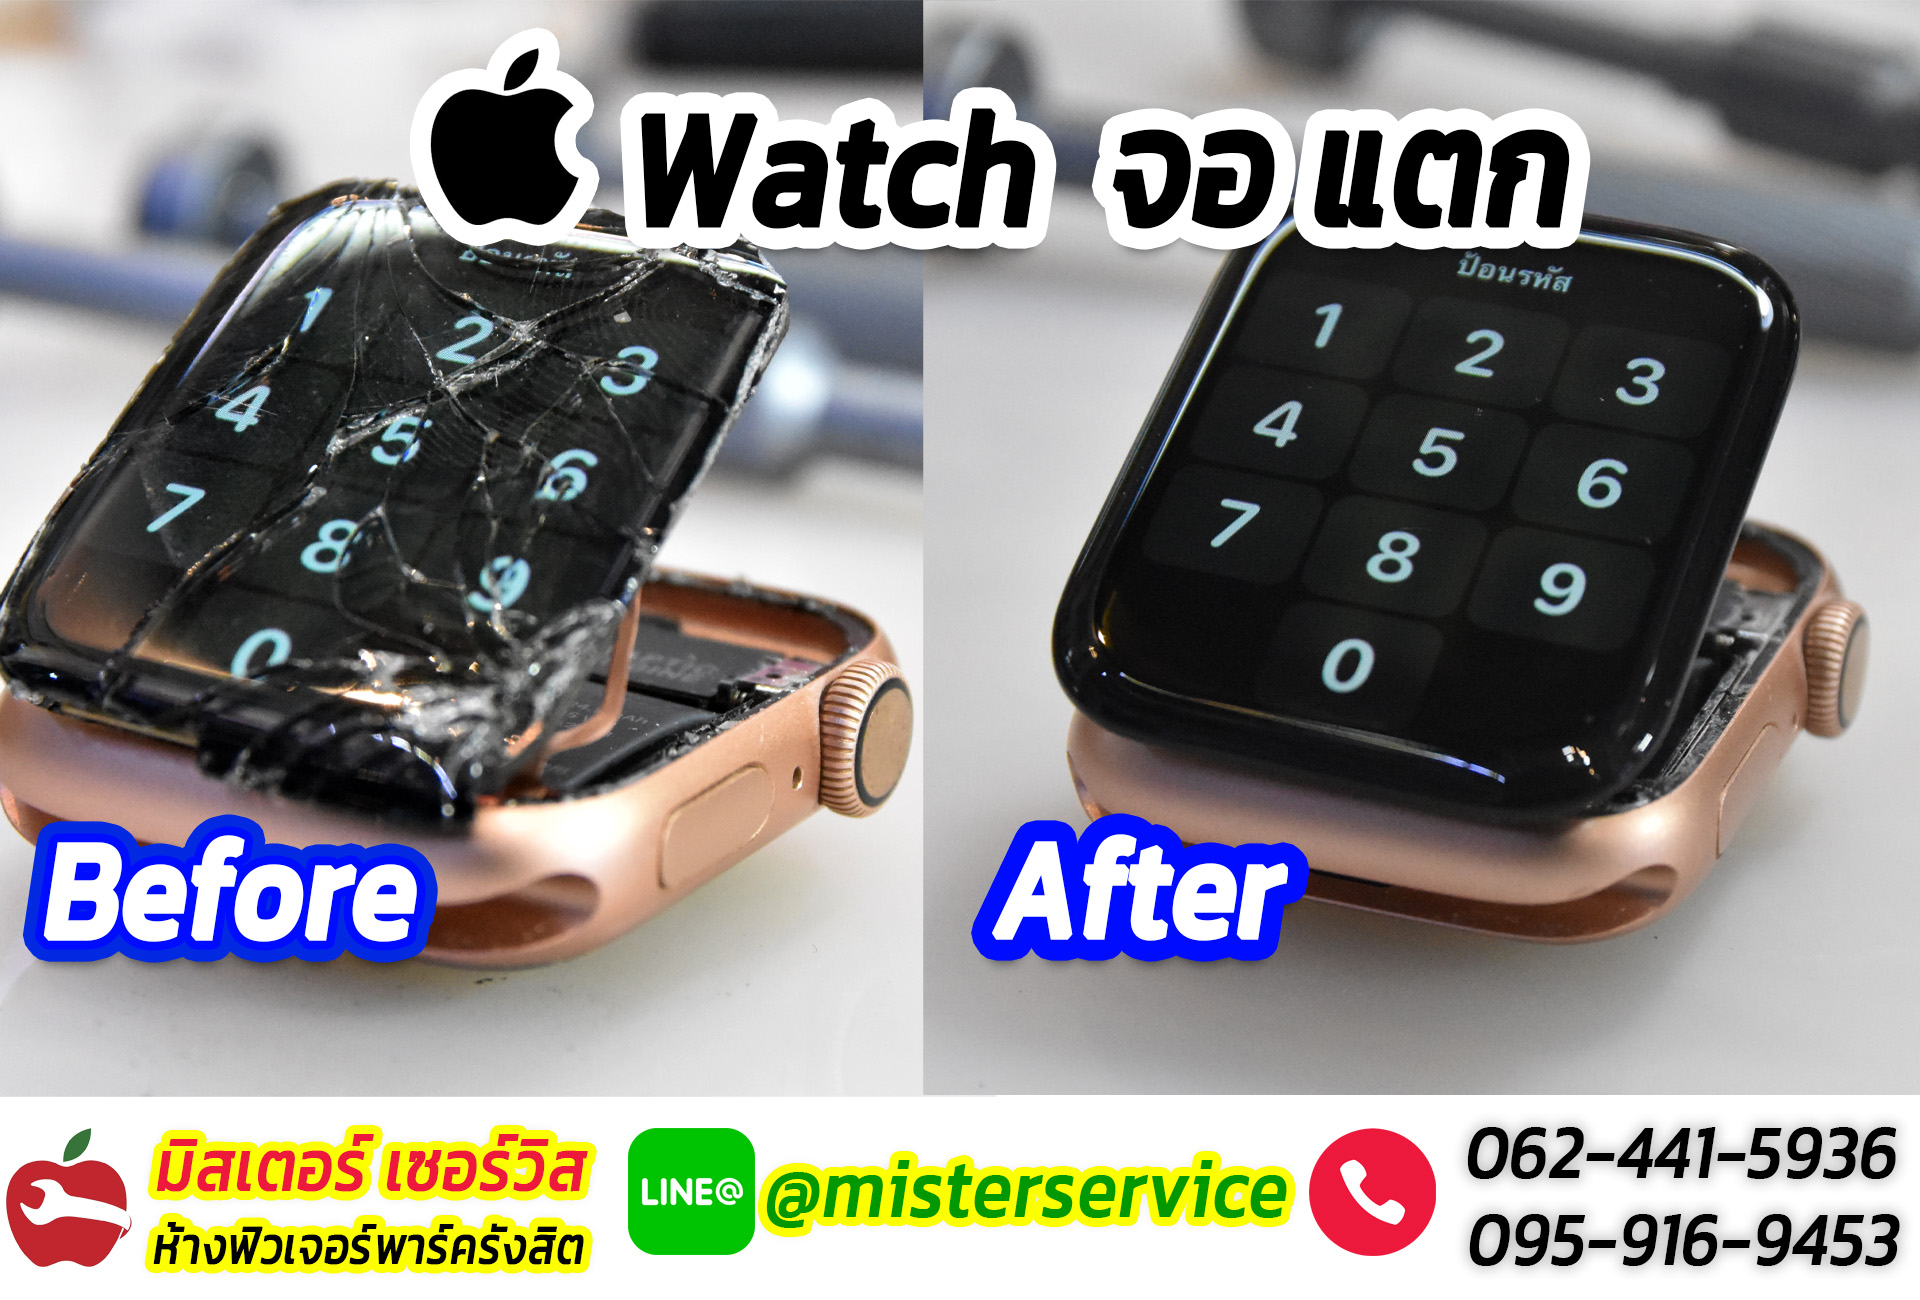 ซ่อม Apple Watch ศรีสระเกษ